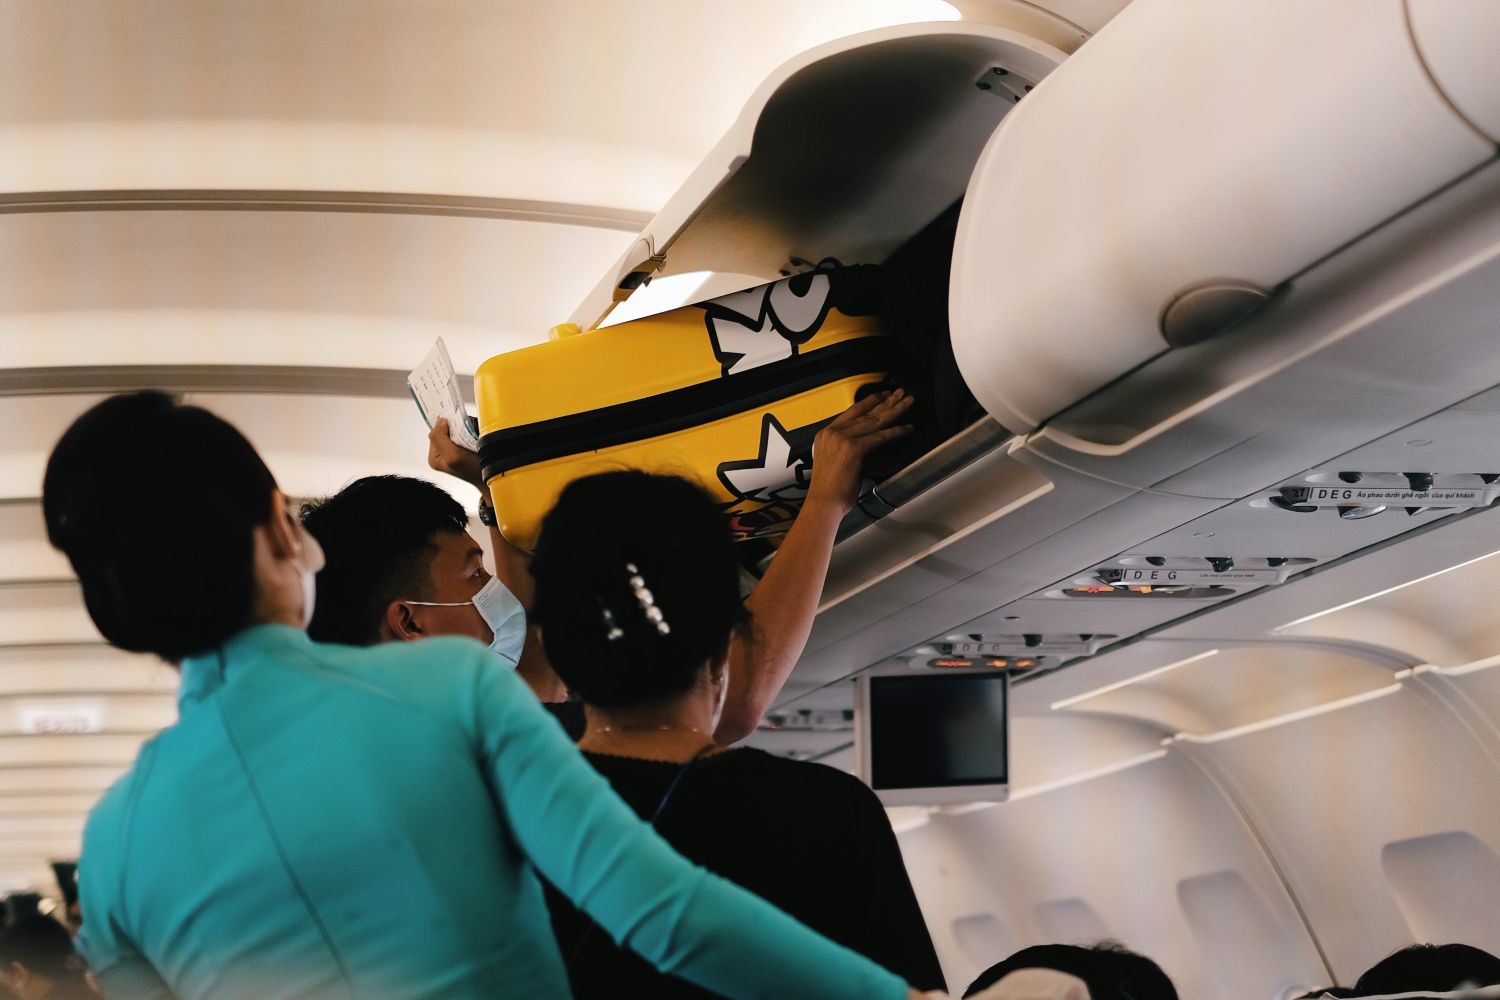 Qué equipaje de mano puedo llevar gratis un avión de Ryanair, Iberia, Vueling o Easyjet?